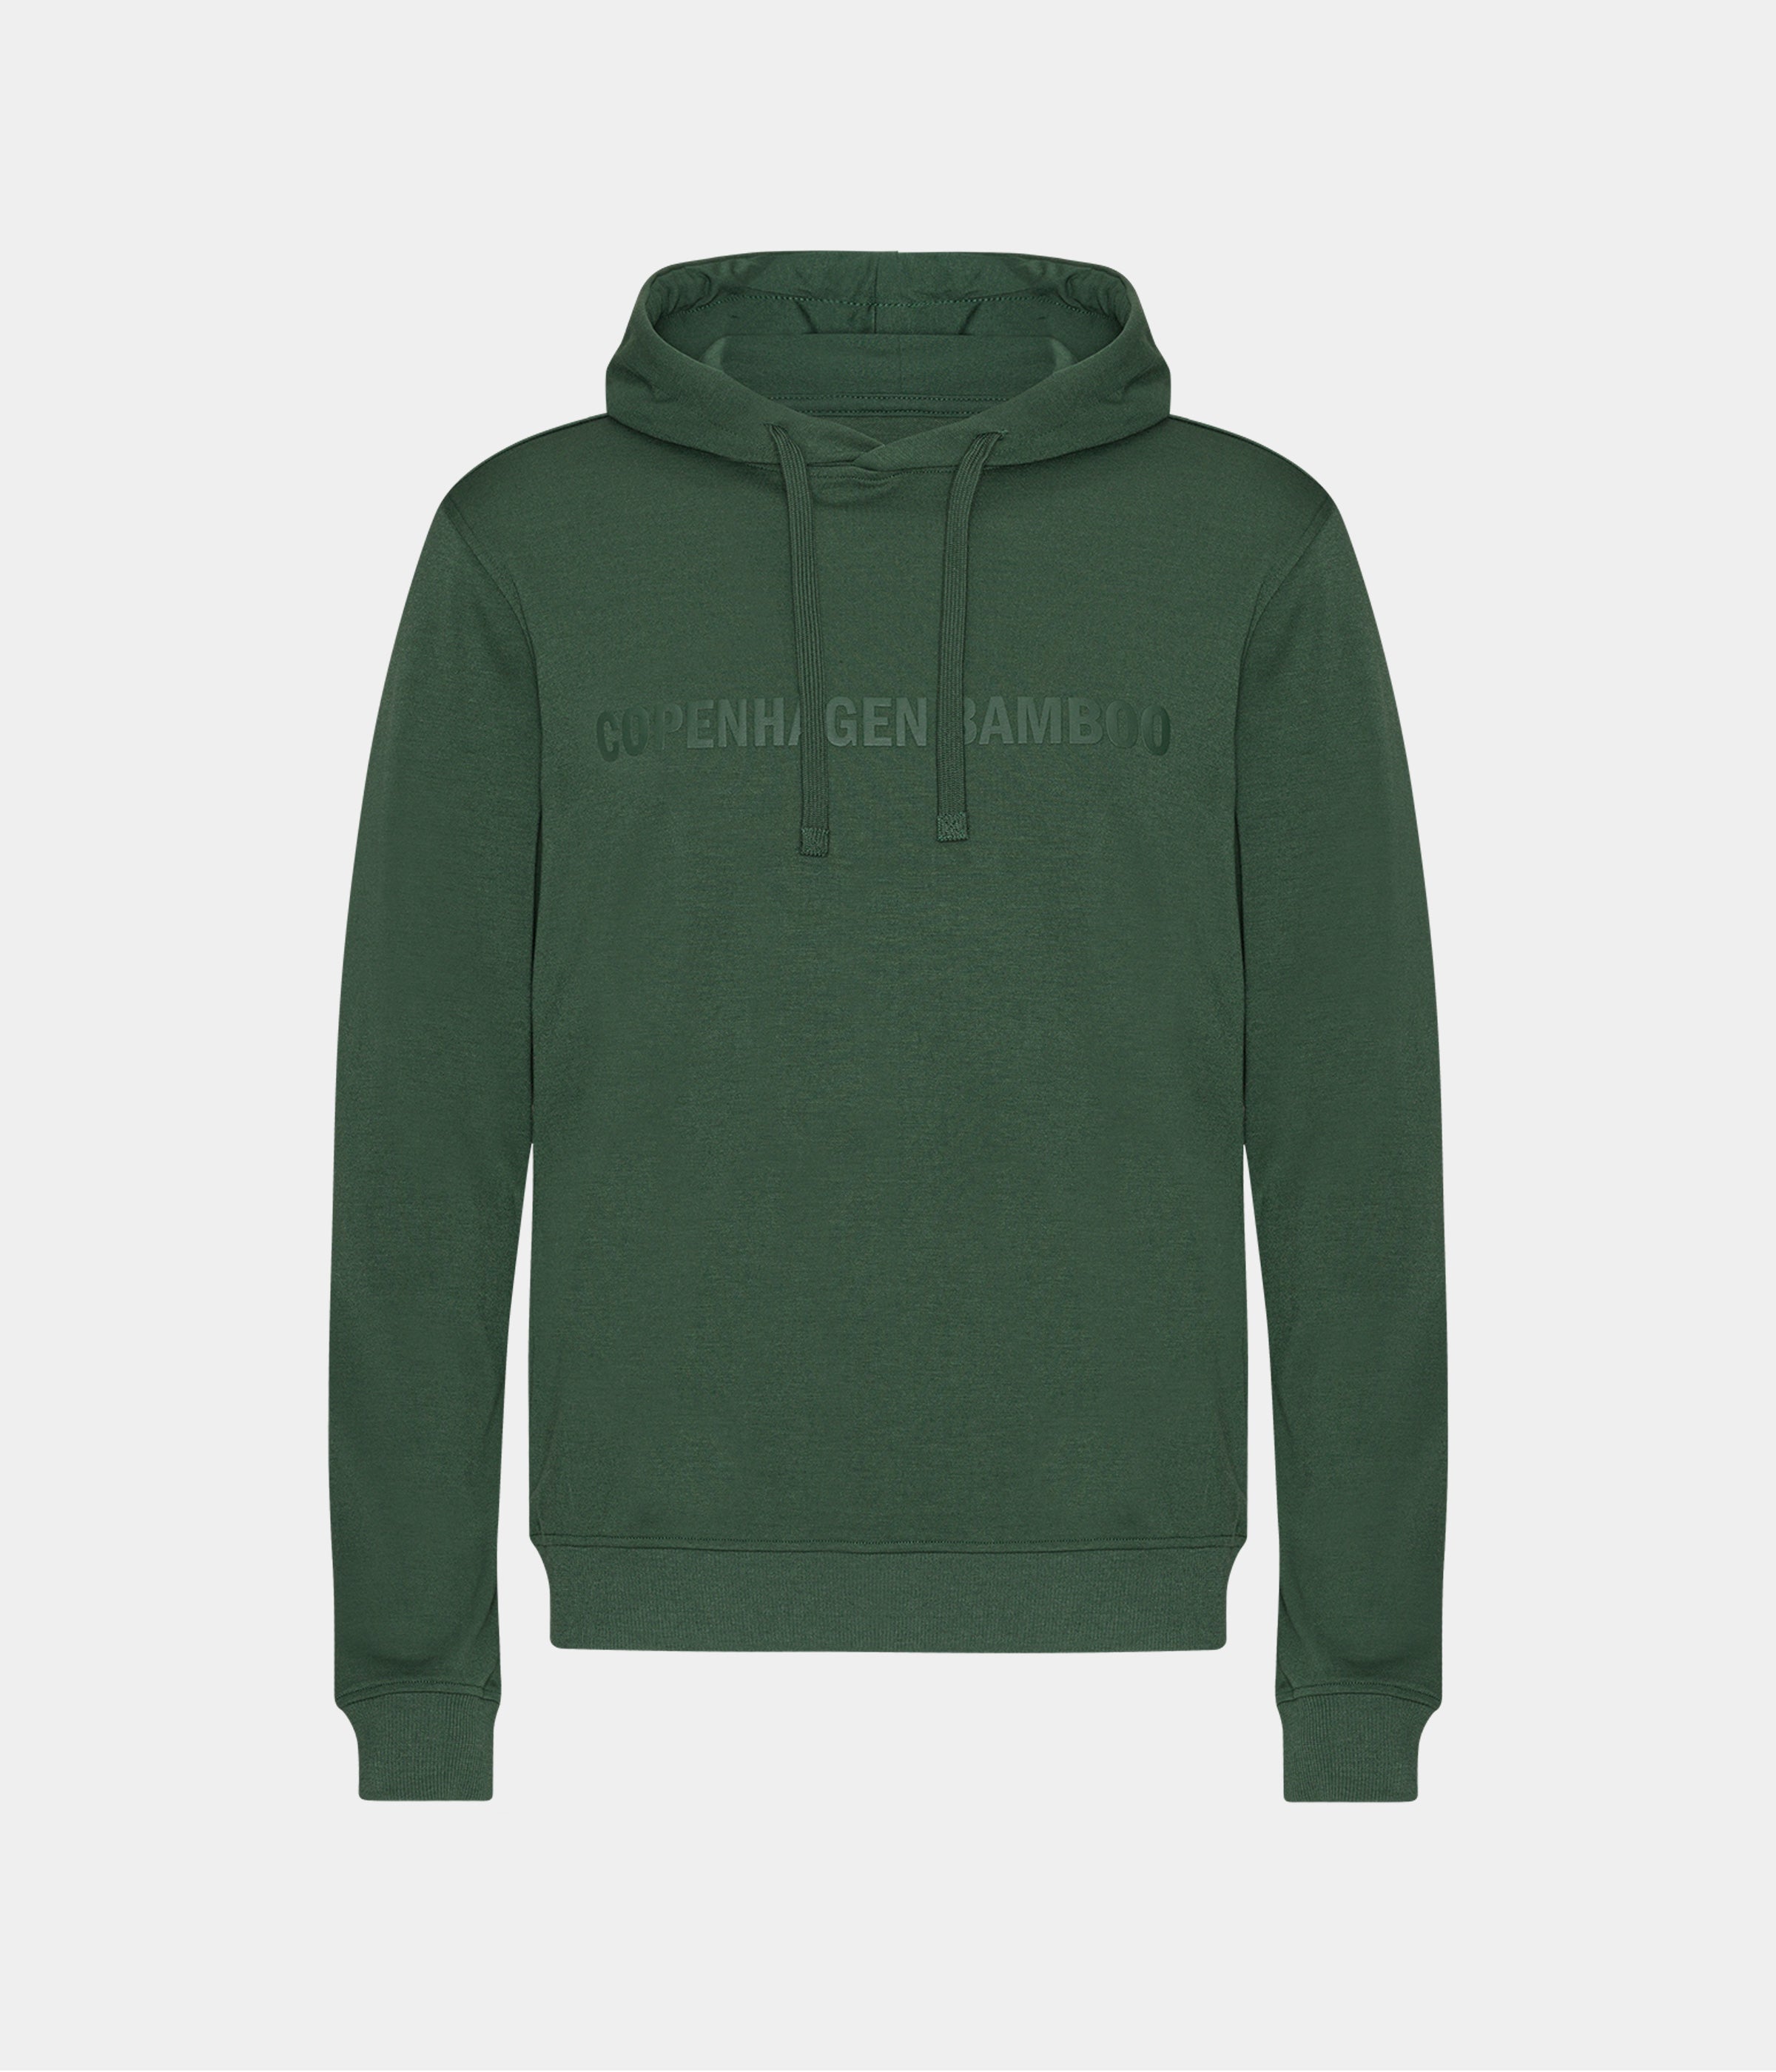 Billede af Grøn bambus hoodie til mænd med logo fra Copenhagen Bamboo, XS